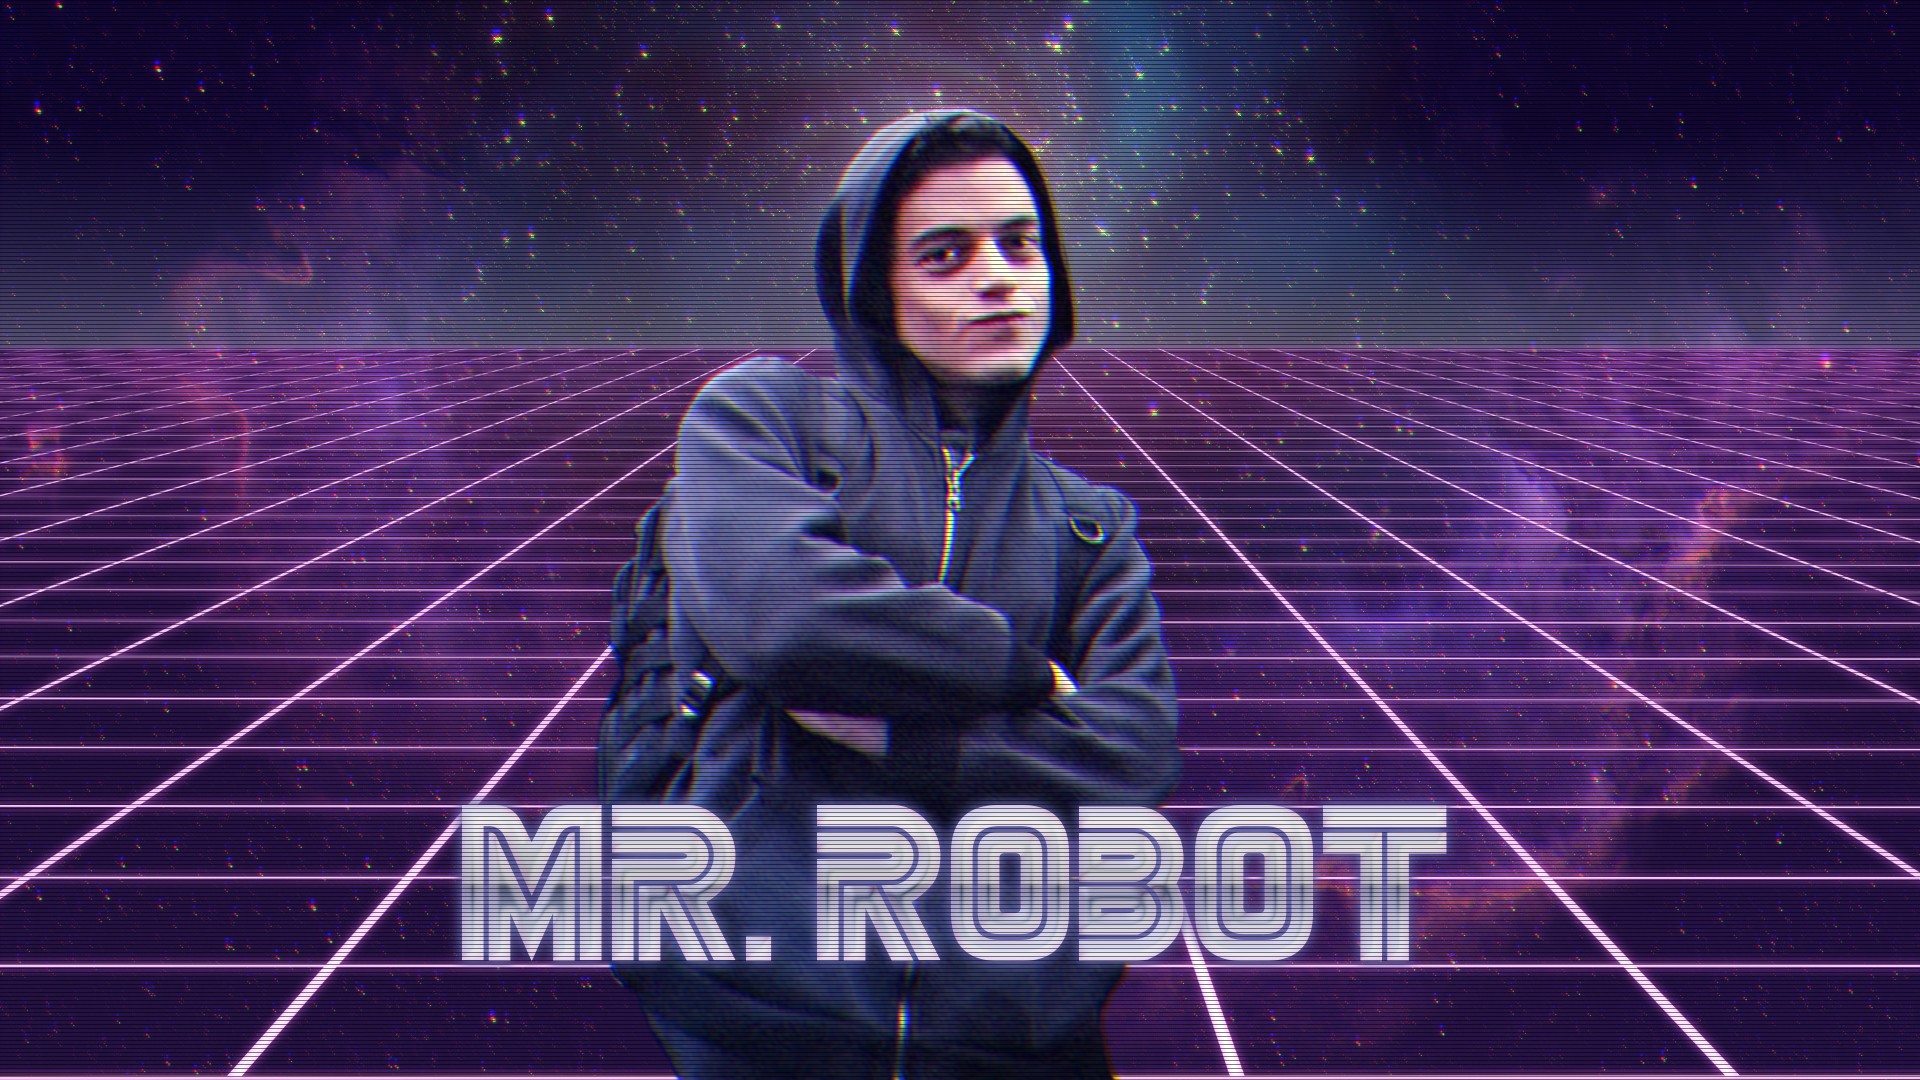 Mr. Robot, Hackerman, Hacking, Mr. Robot (TV Series) Wallpaper